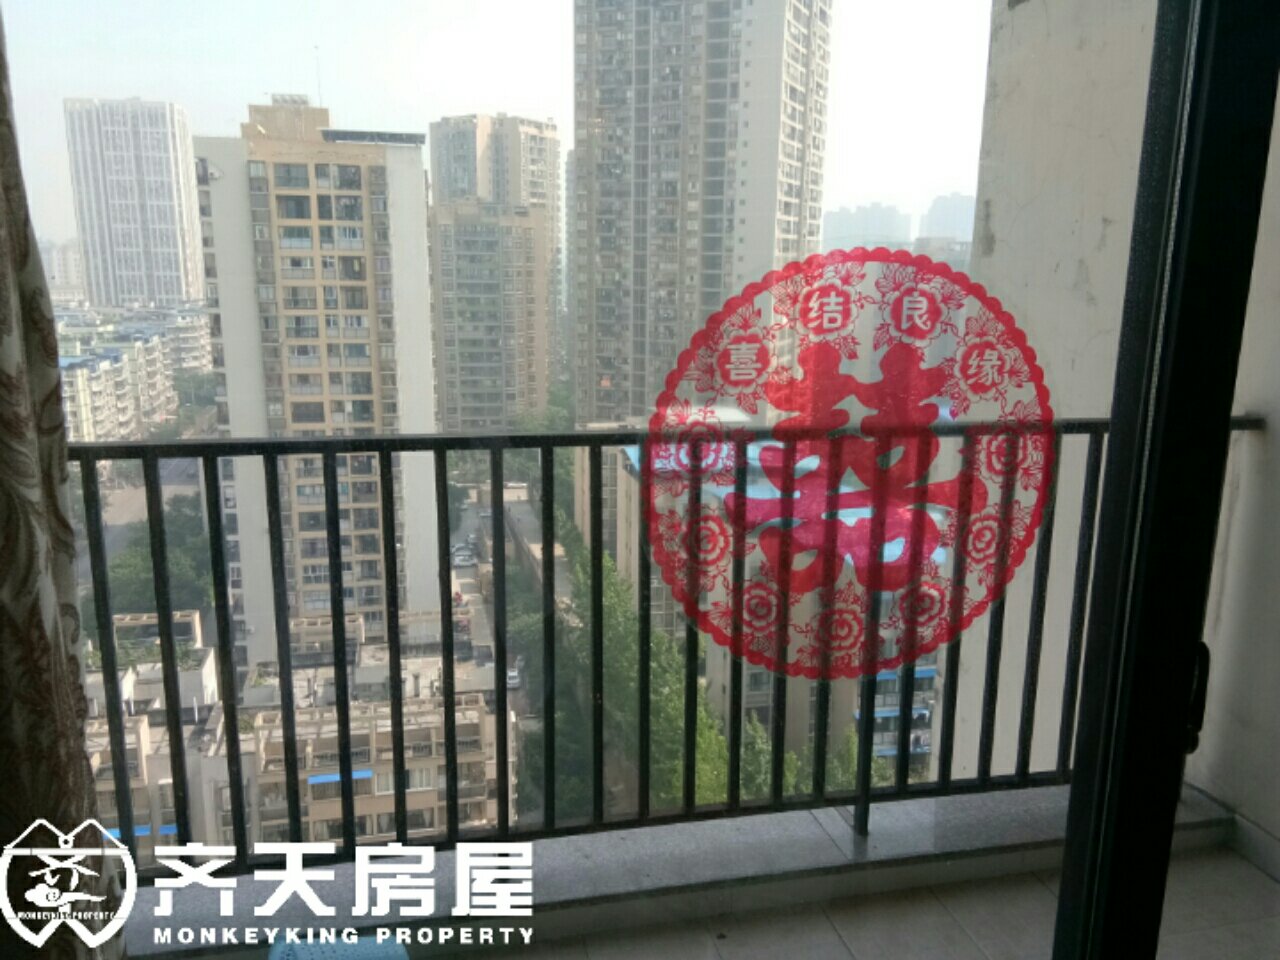 东海滨江城翠庭,政策已经至此,房价逐渐回升,观望后悔莫及8